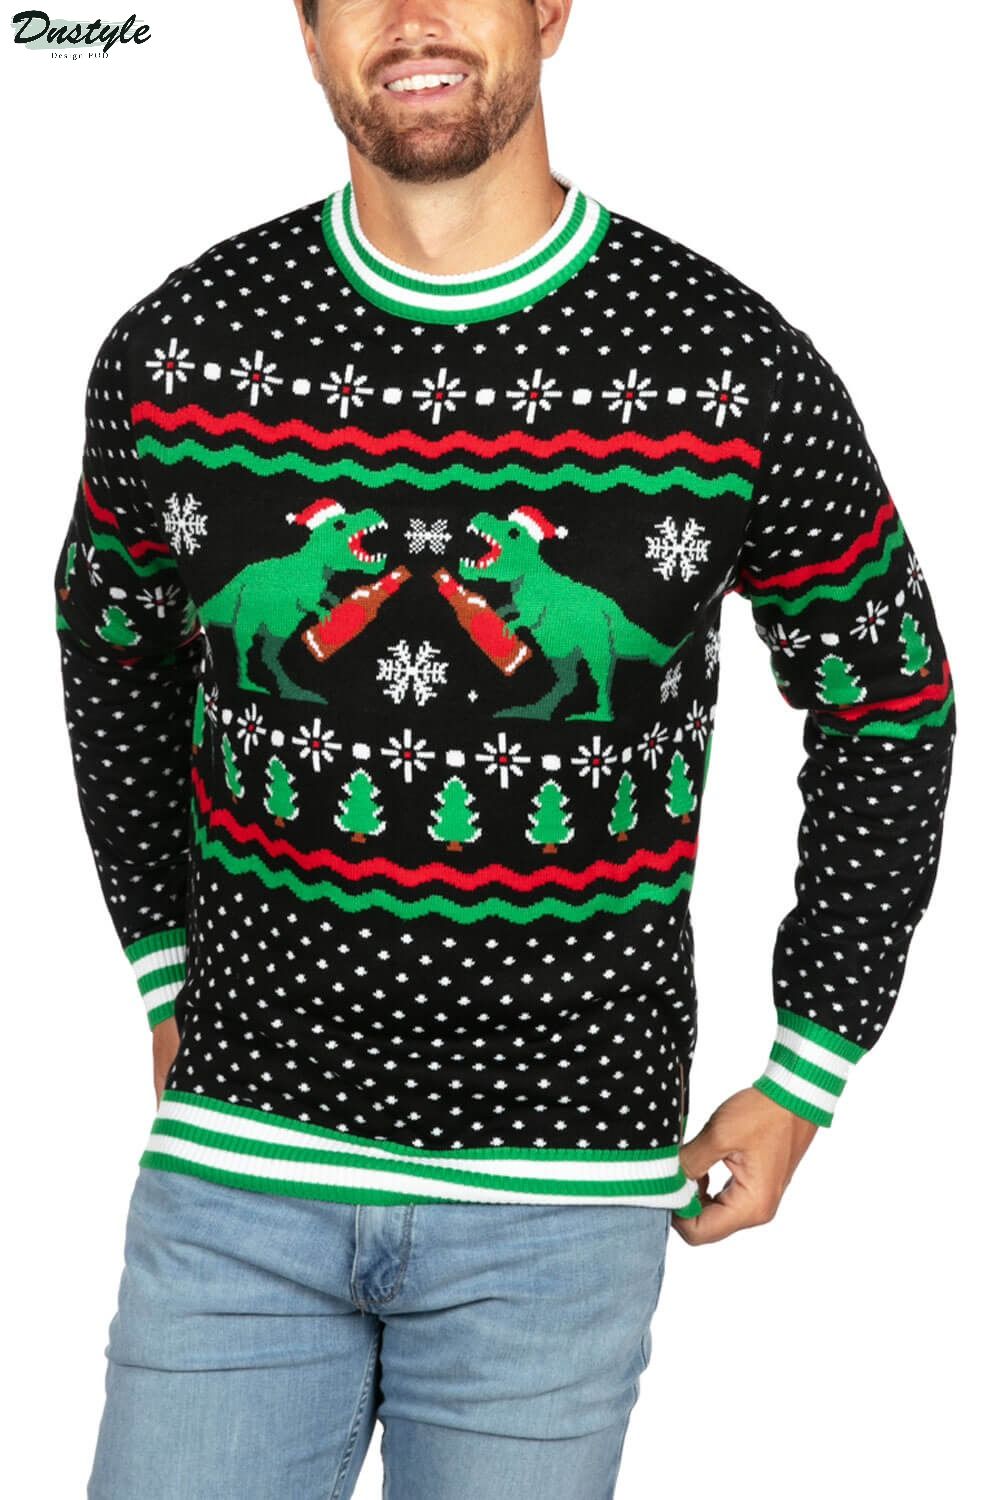 Dino Mate Ugly Christmas Sweater